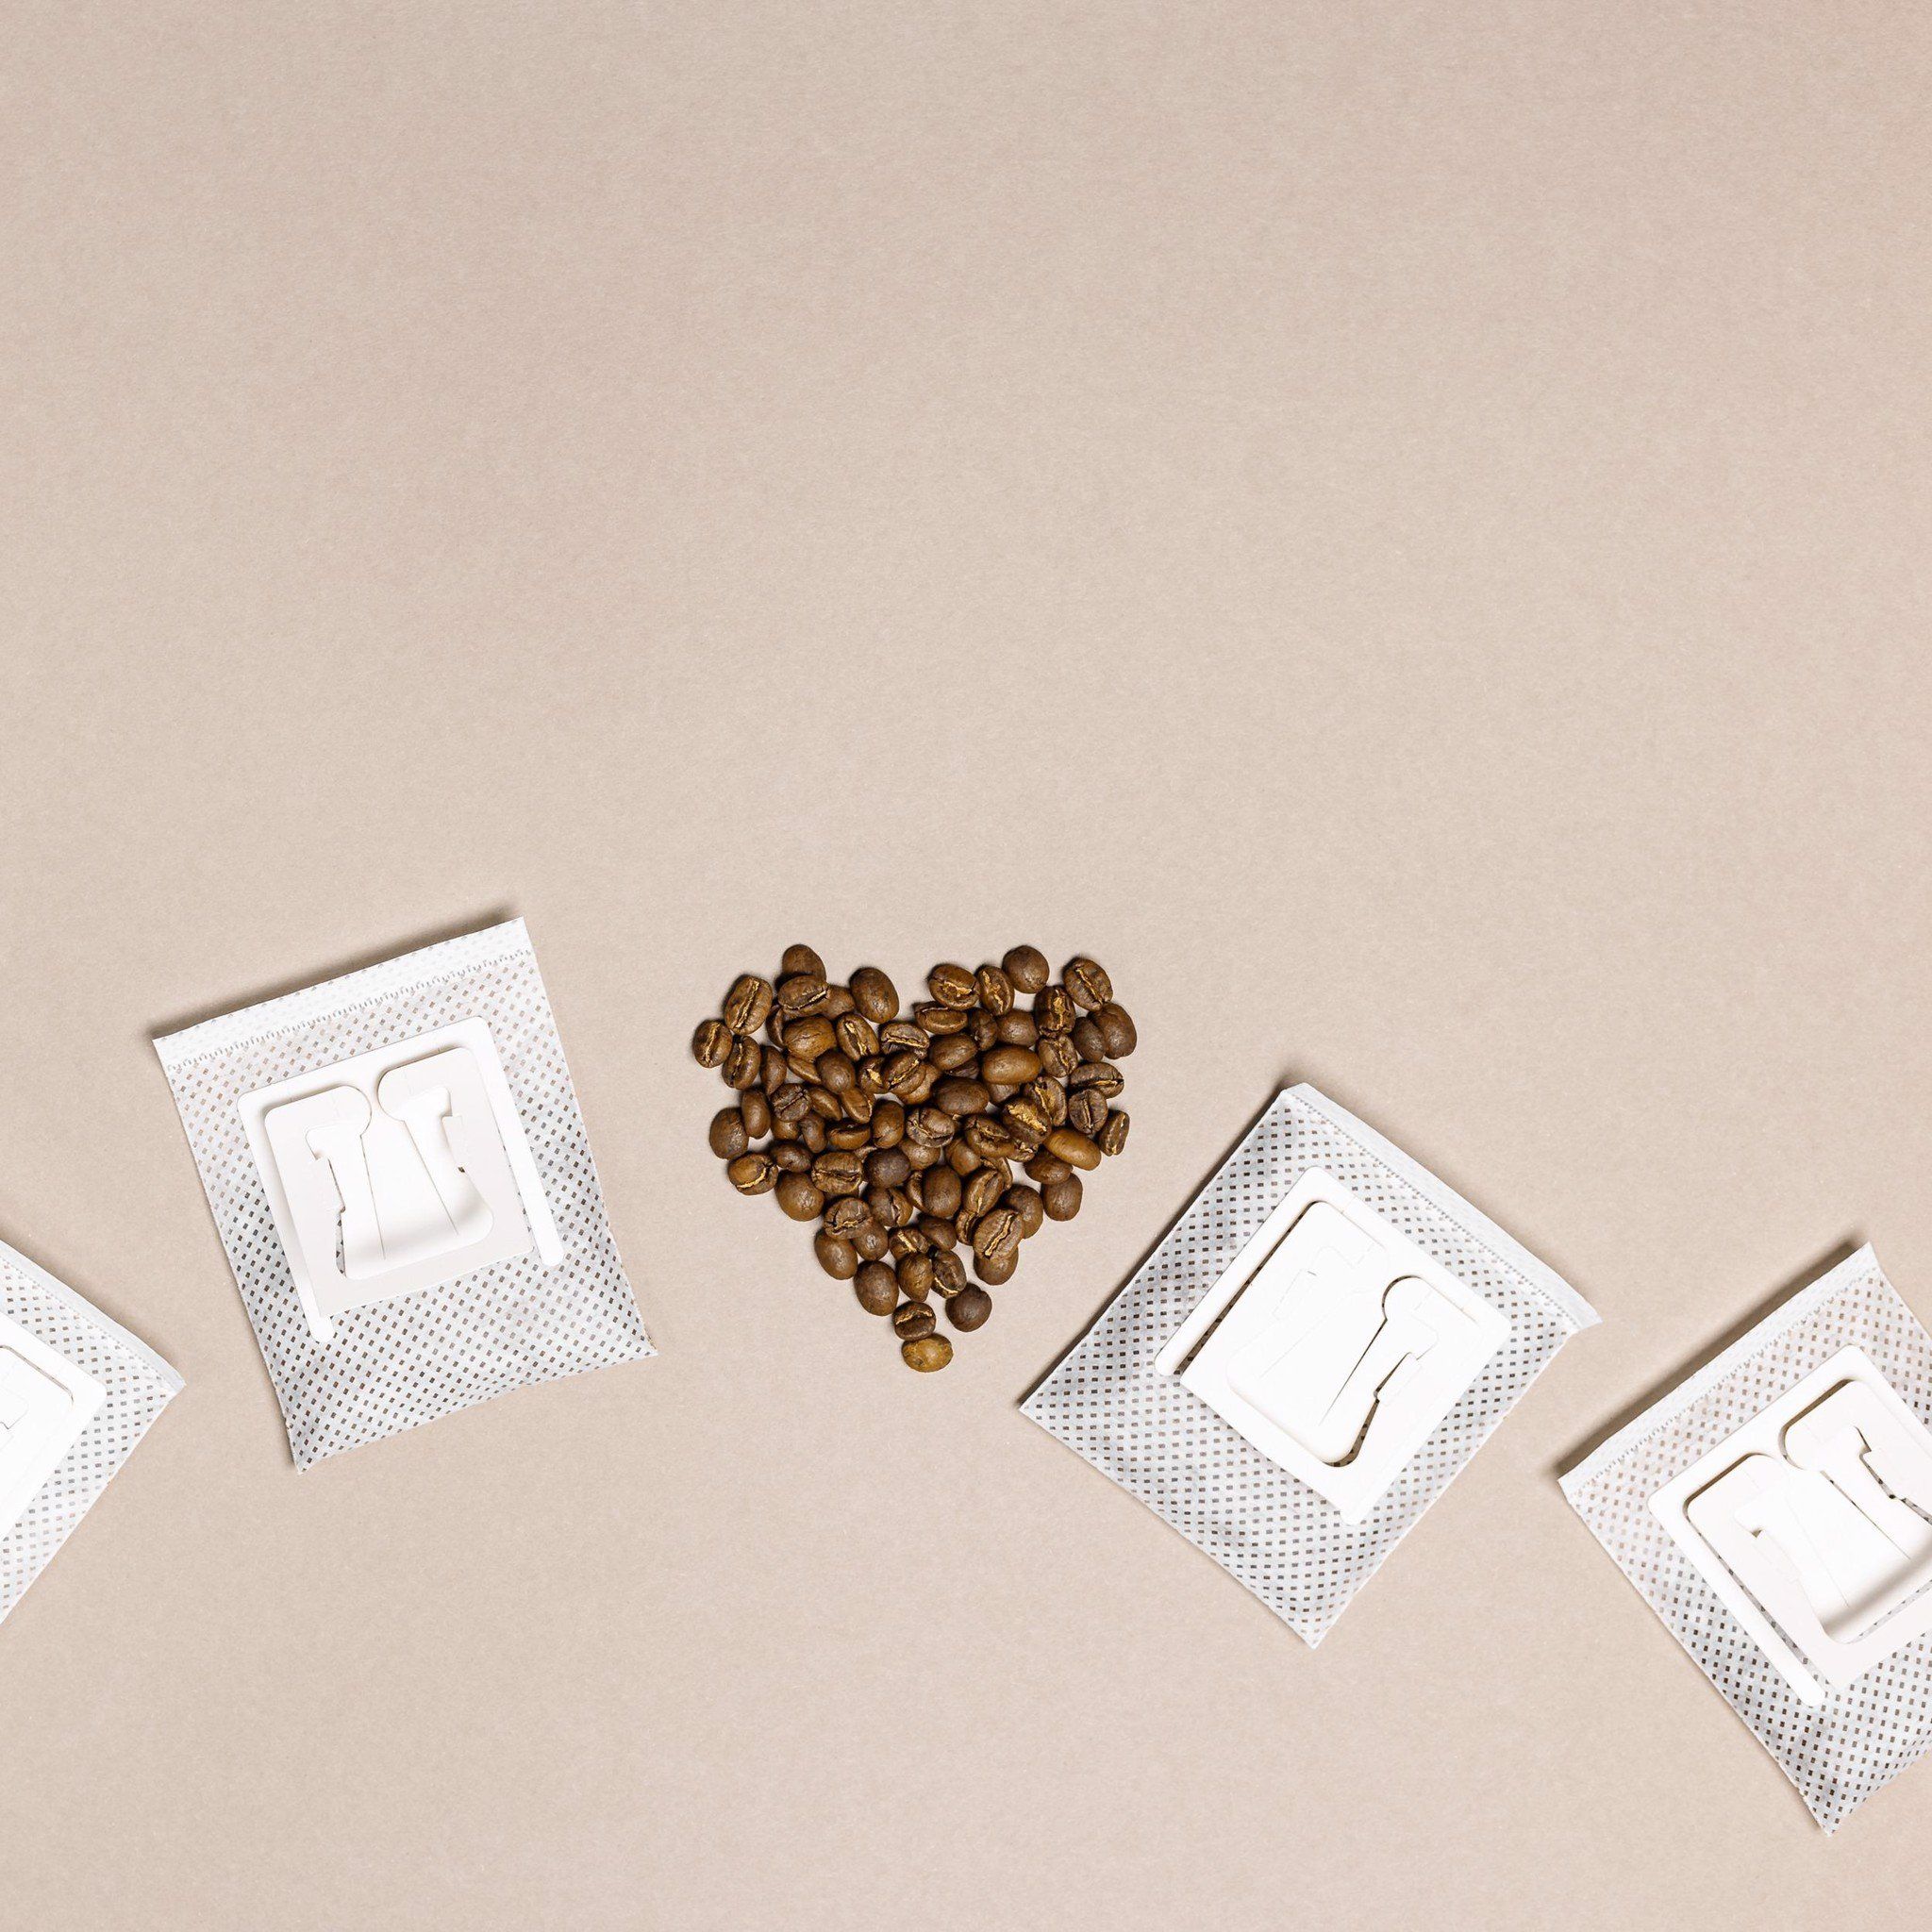  Cà phê phin giấy Nam Anh Global 100% Arabica & Robusta - hộp 10 gói 